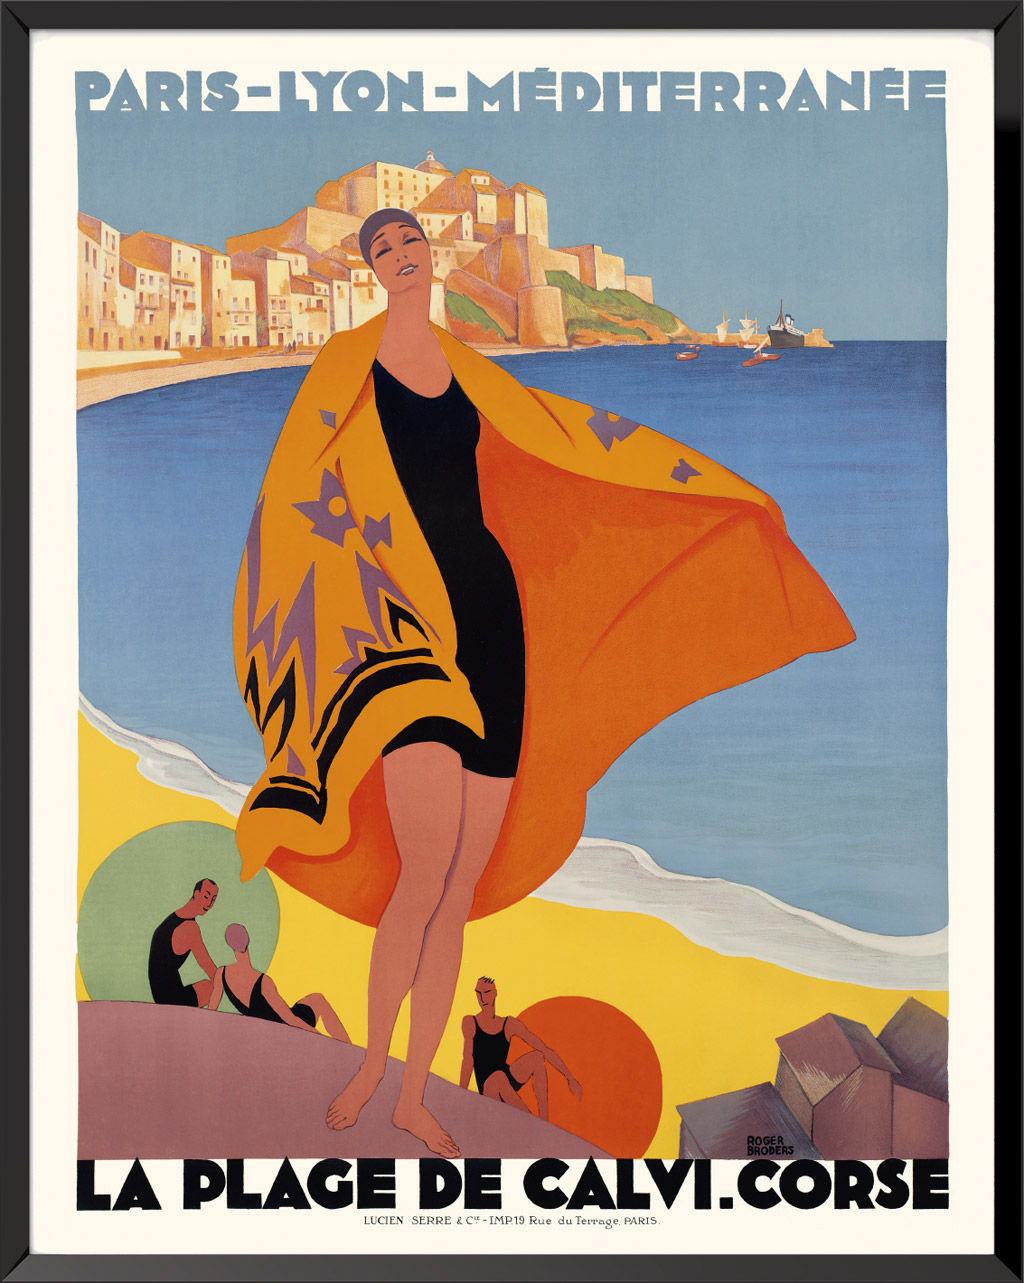 Poster La plage de Calvi Corse by Roger Broders